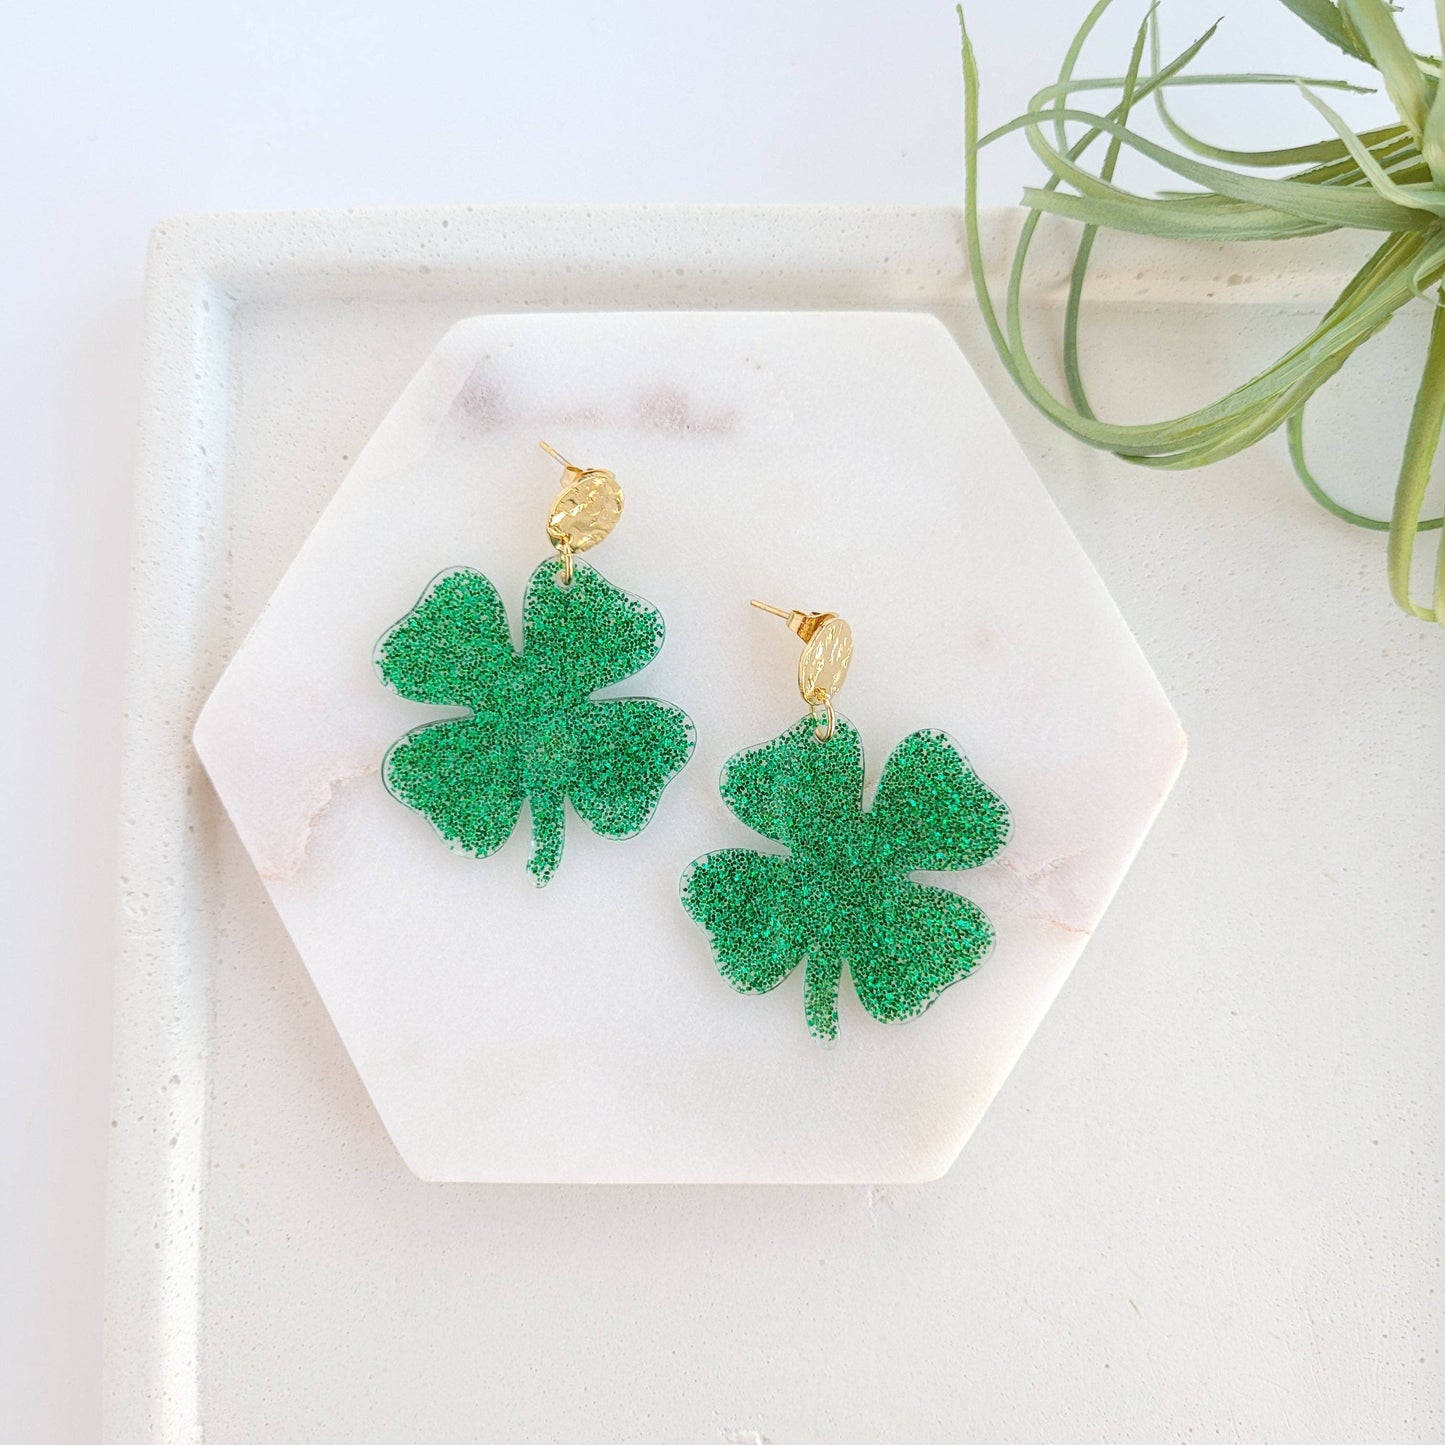 Spiffy & Splendid - Four Leaf Clover Shamrock Earrings / St. Patrick's Day